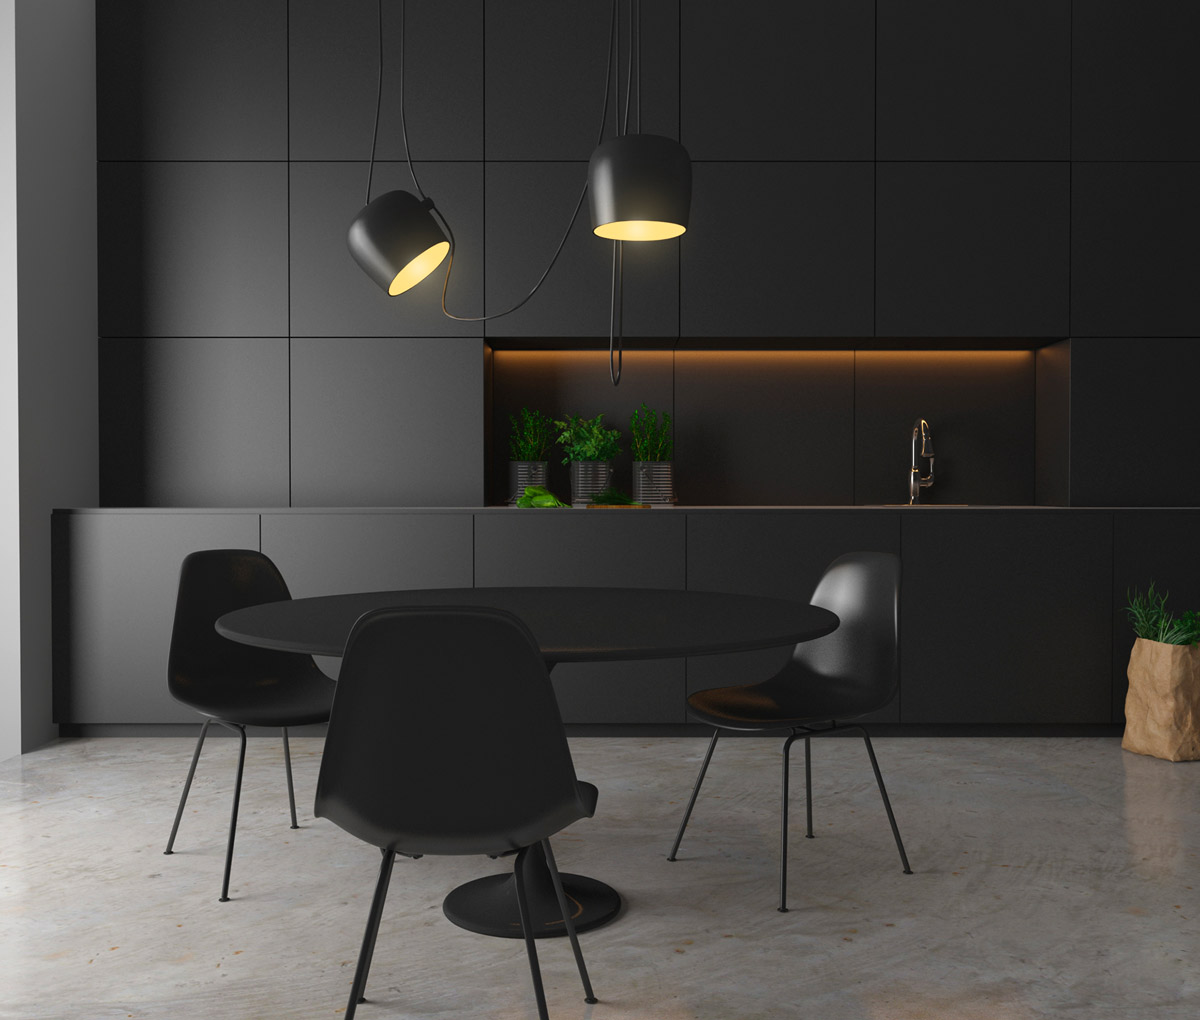 Una cocina de diseño moderno en negro mate